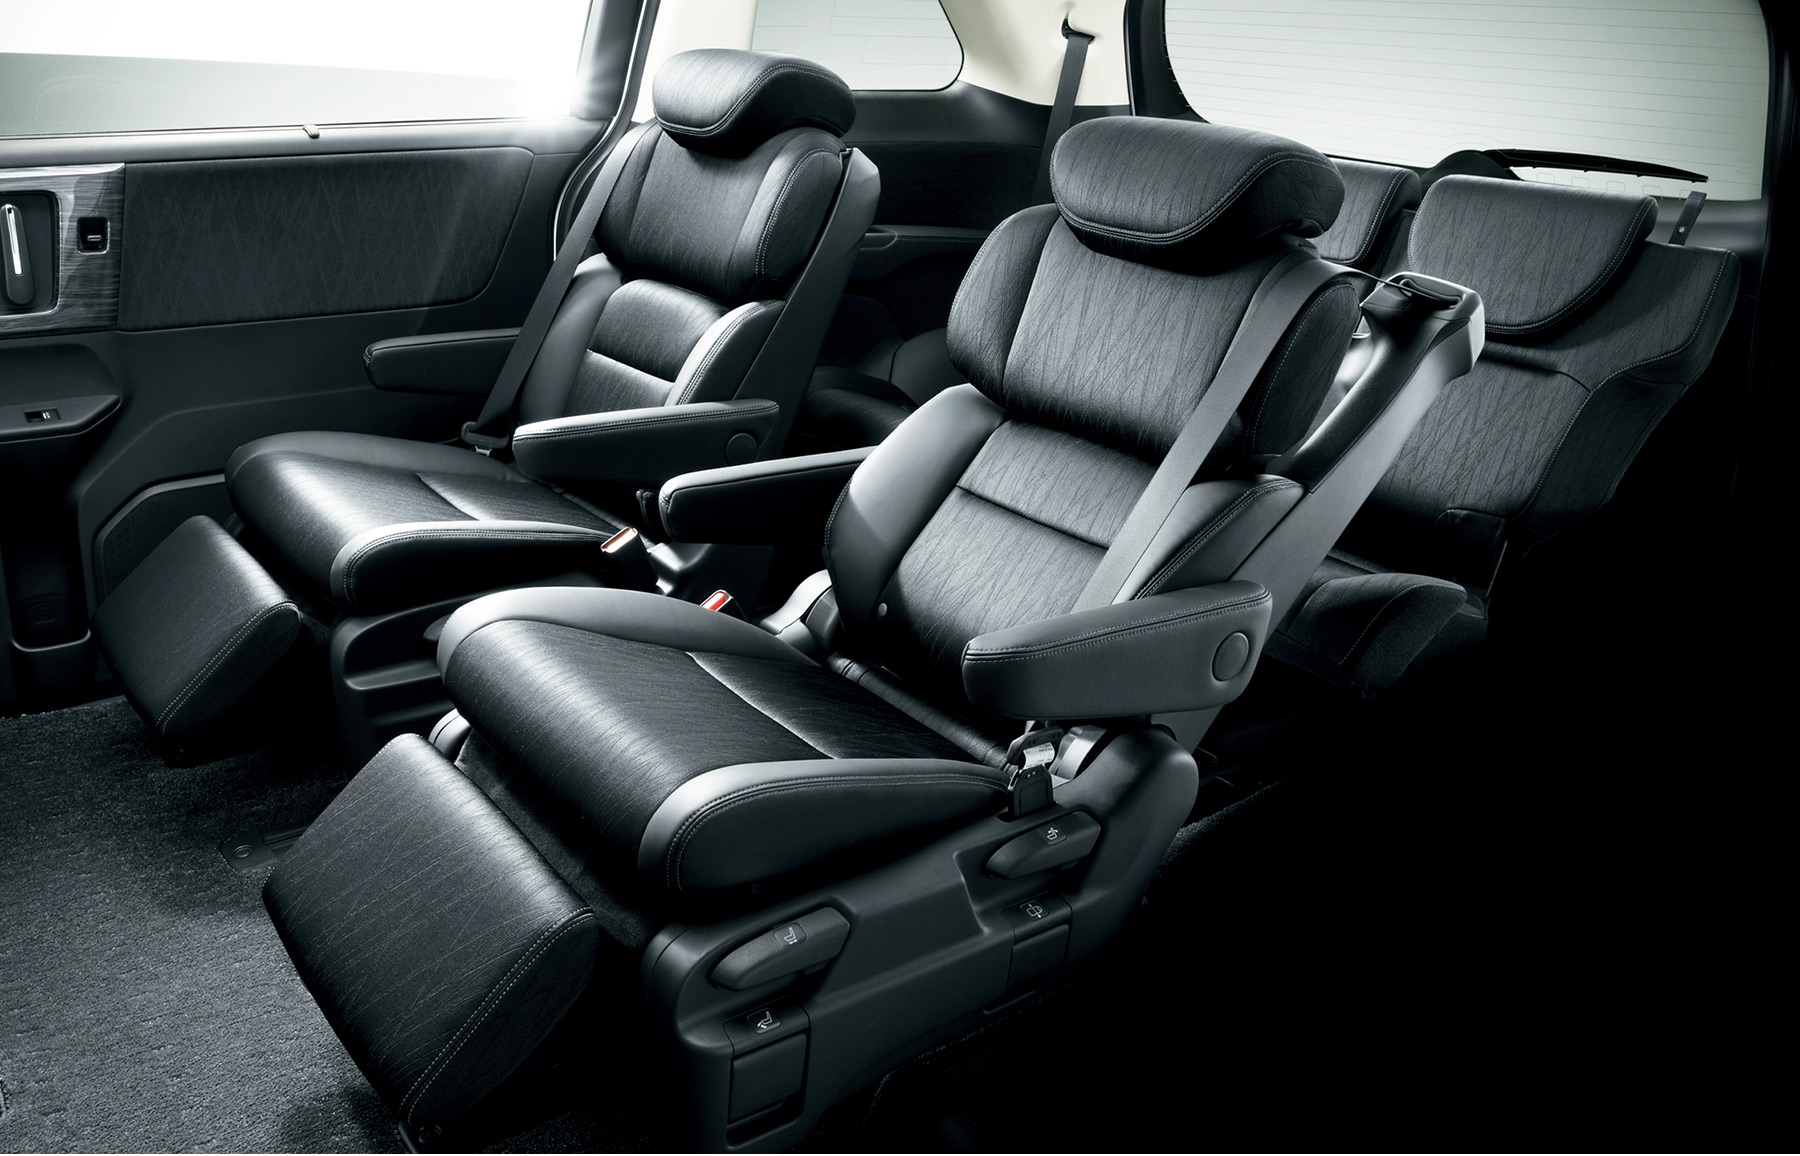 Honda, Captain seat New Honda Odyssey 2014: Honda Odyssey 2014 Mulai Diperkenalkan